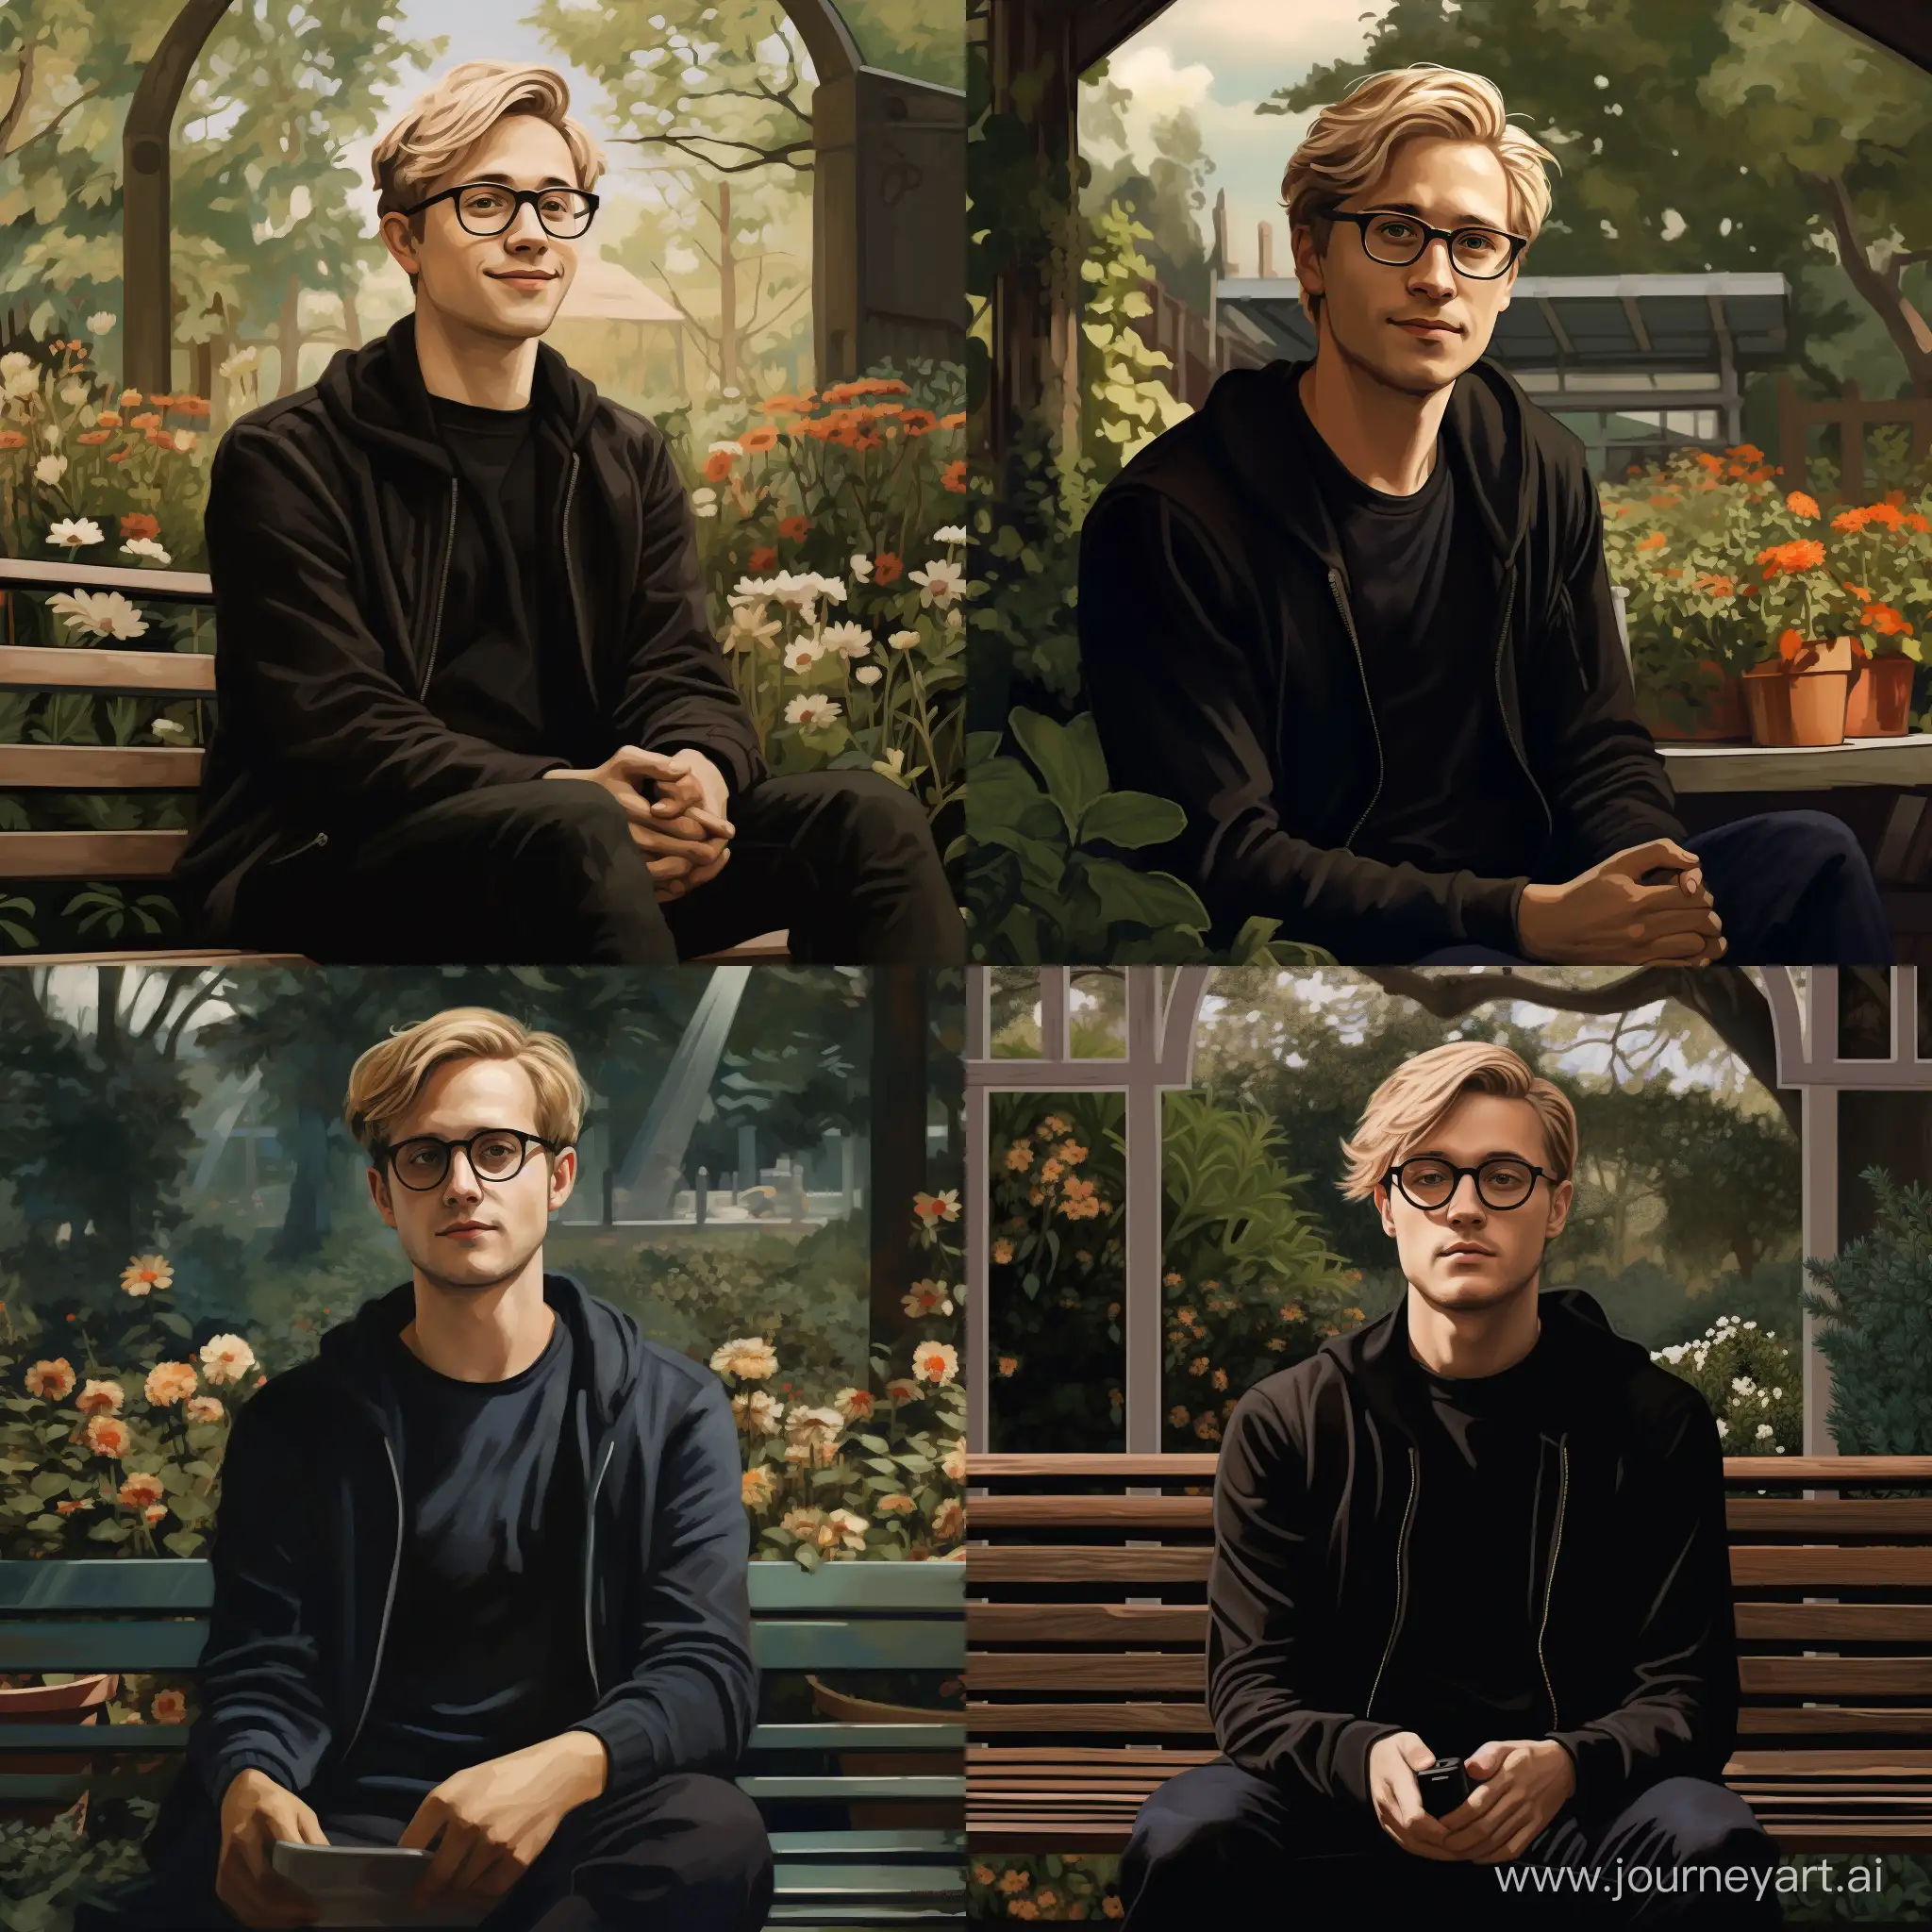 Мужчина лет 30 в очках с очень короткими русыми волосами, одетый в чёрный свитер и джинсы, сидит на скамейке в саду